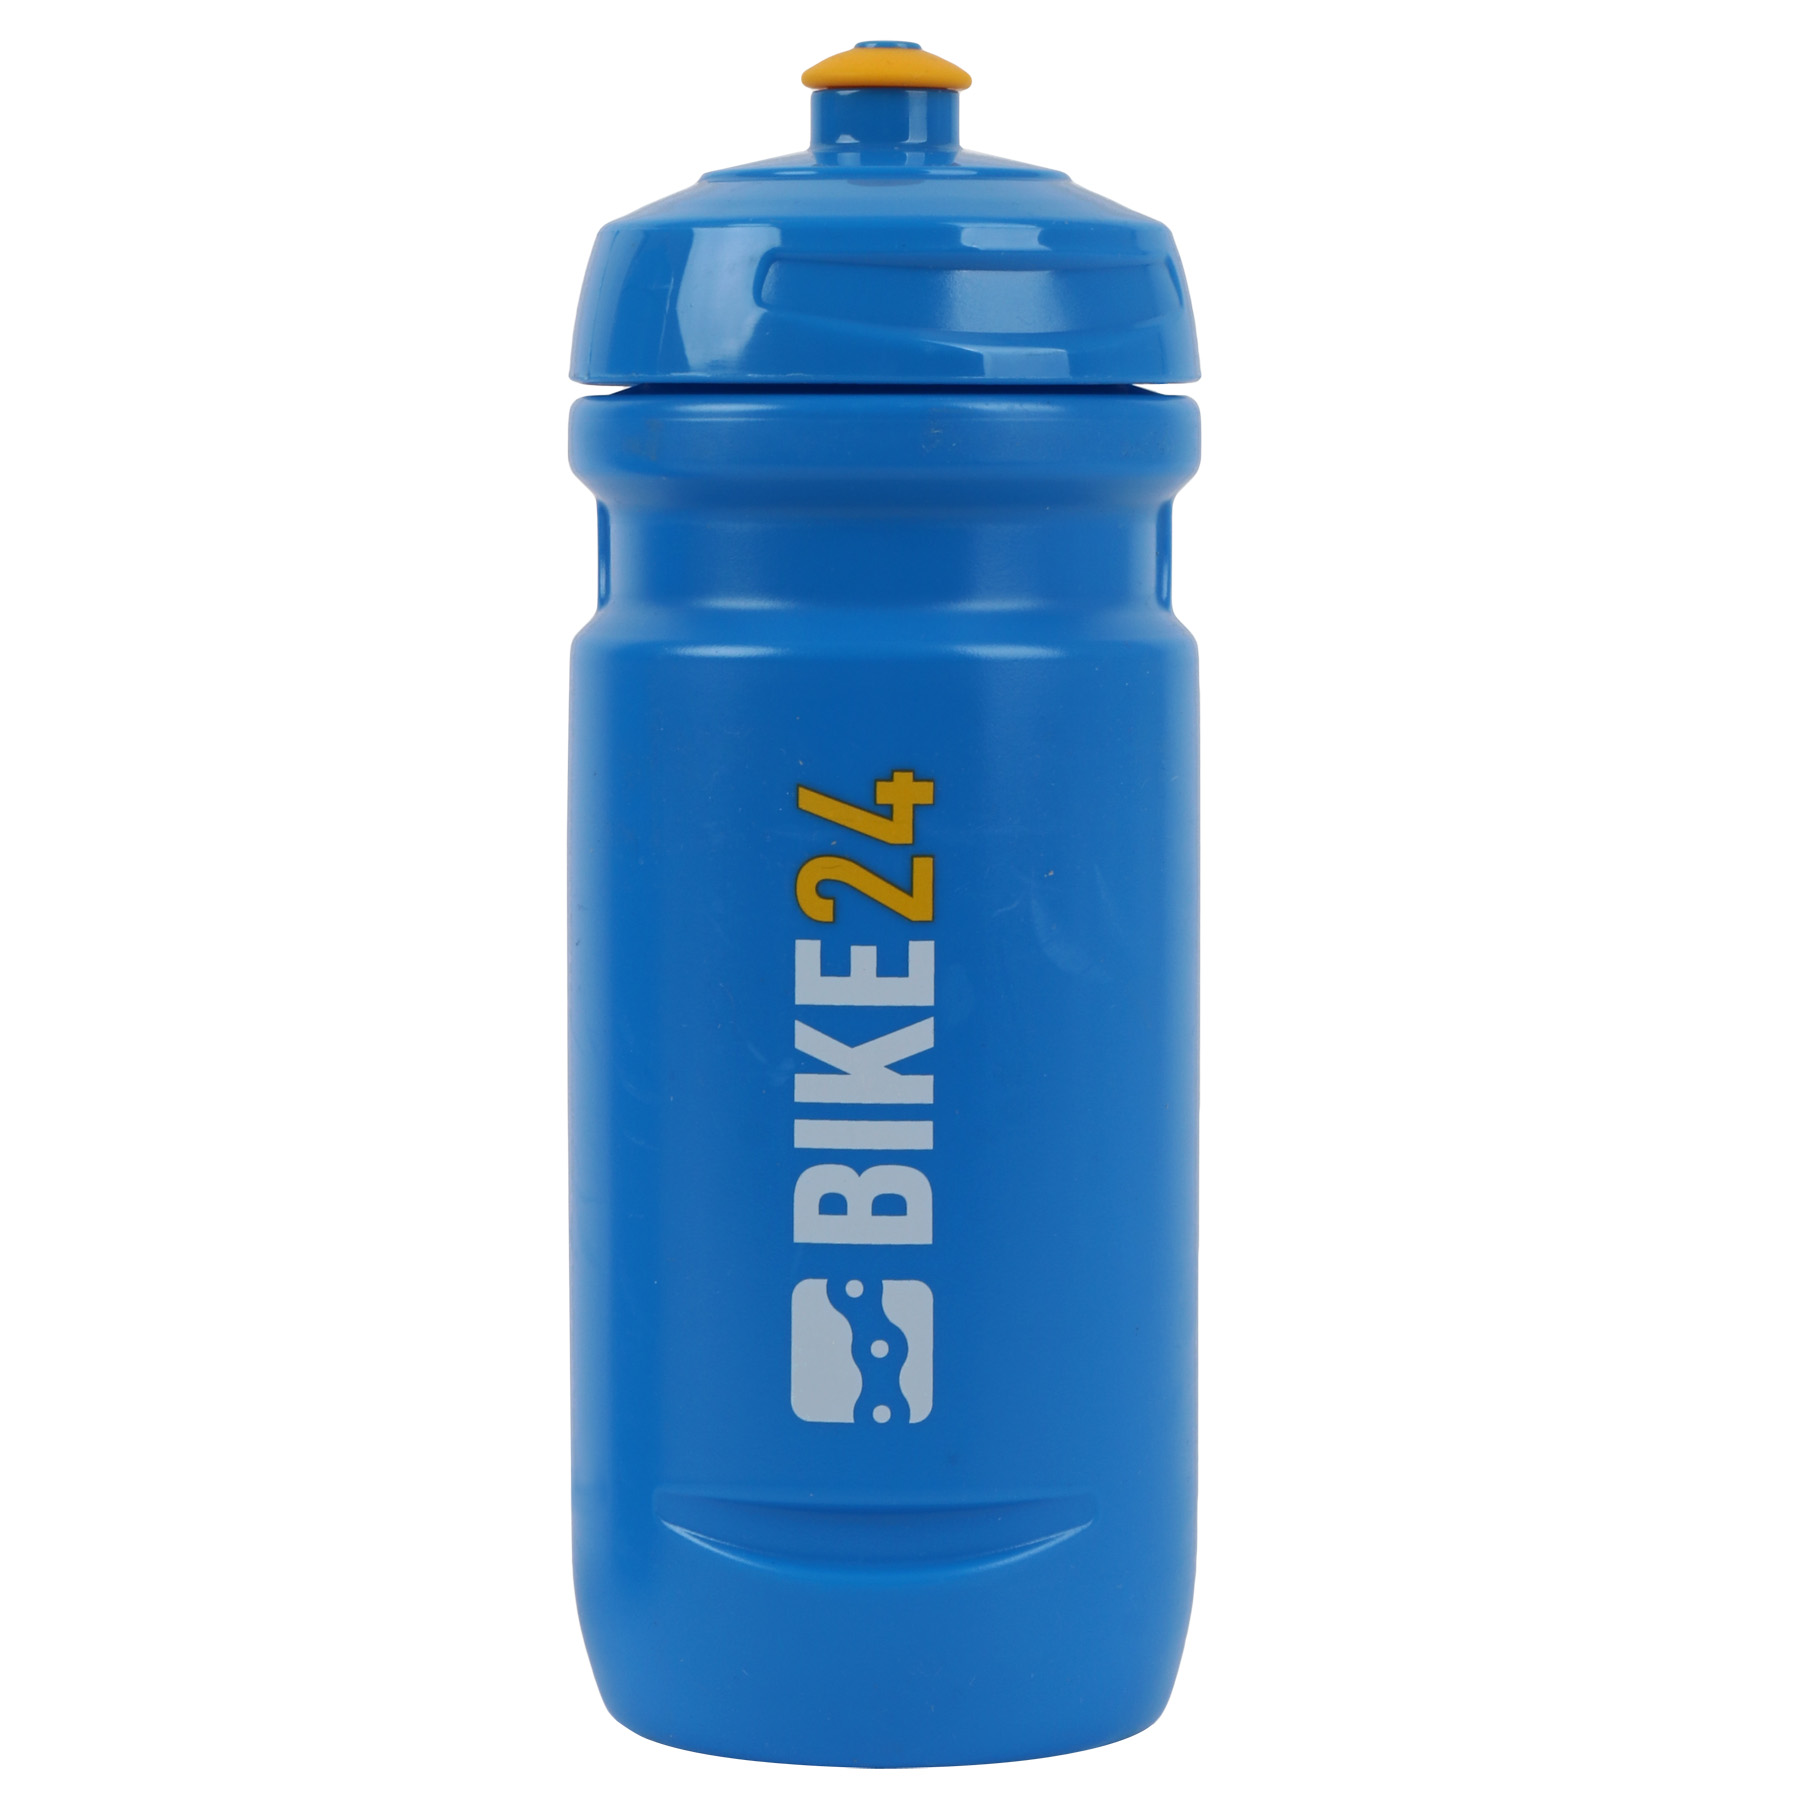 Produktbild von Elite BIKE24 Loli Fahrradflasche 600ml - blau